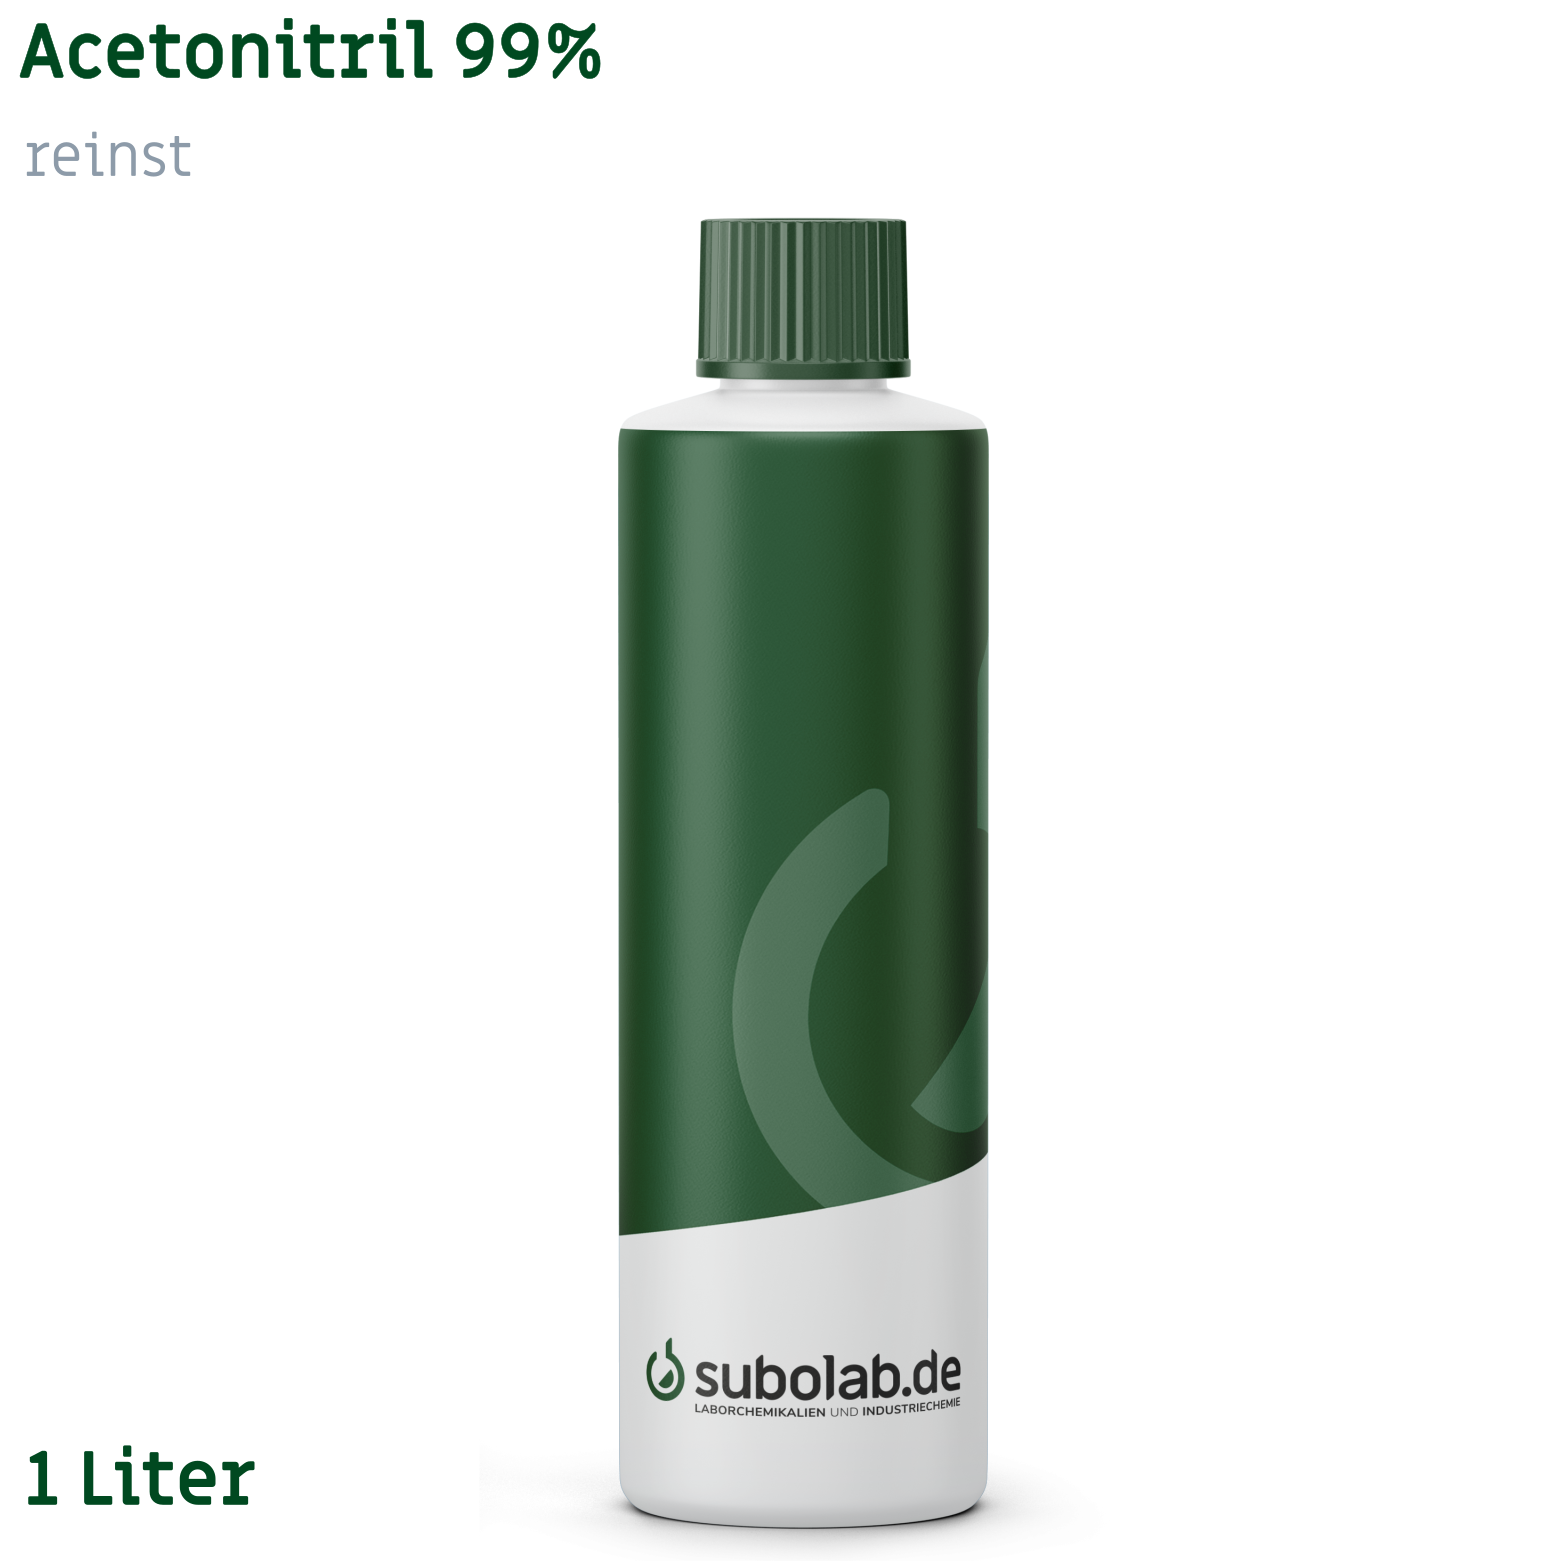 Bild von Acetonitril 99% reinst (1 Liter)